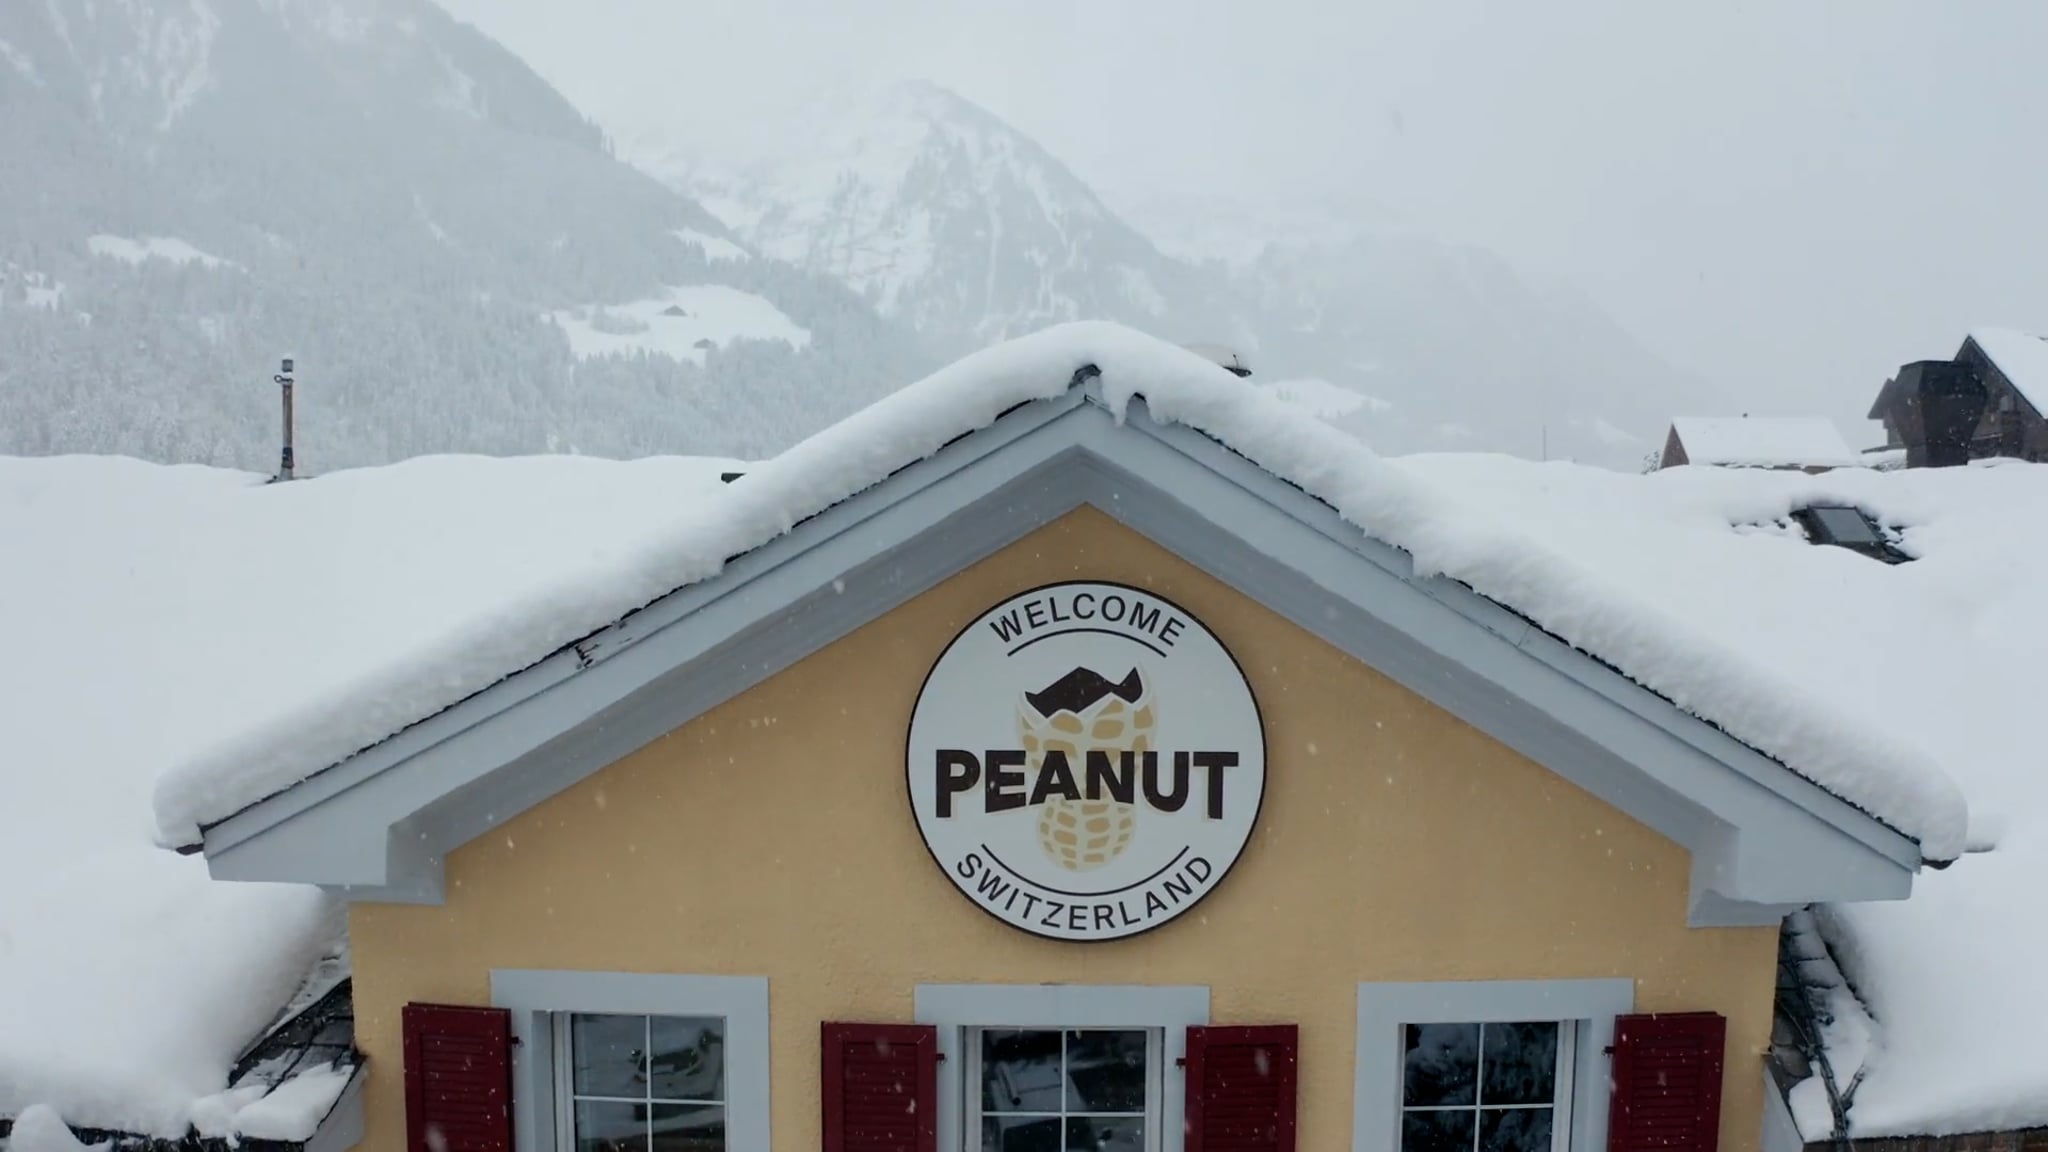 Peanut Lodge - herobanner